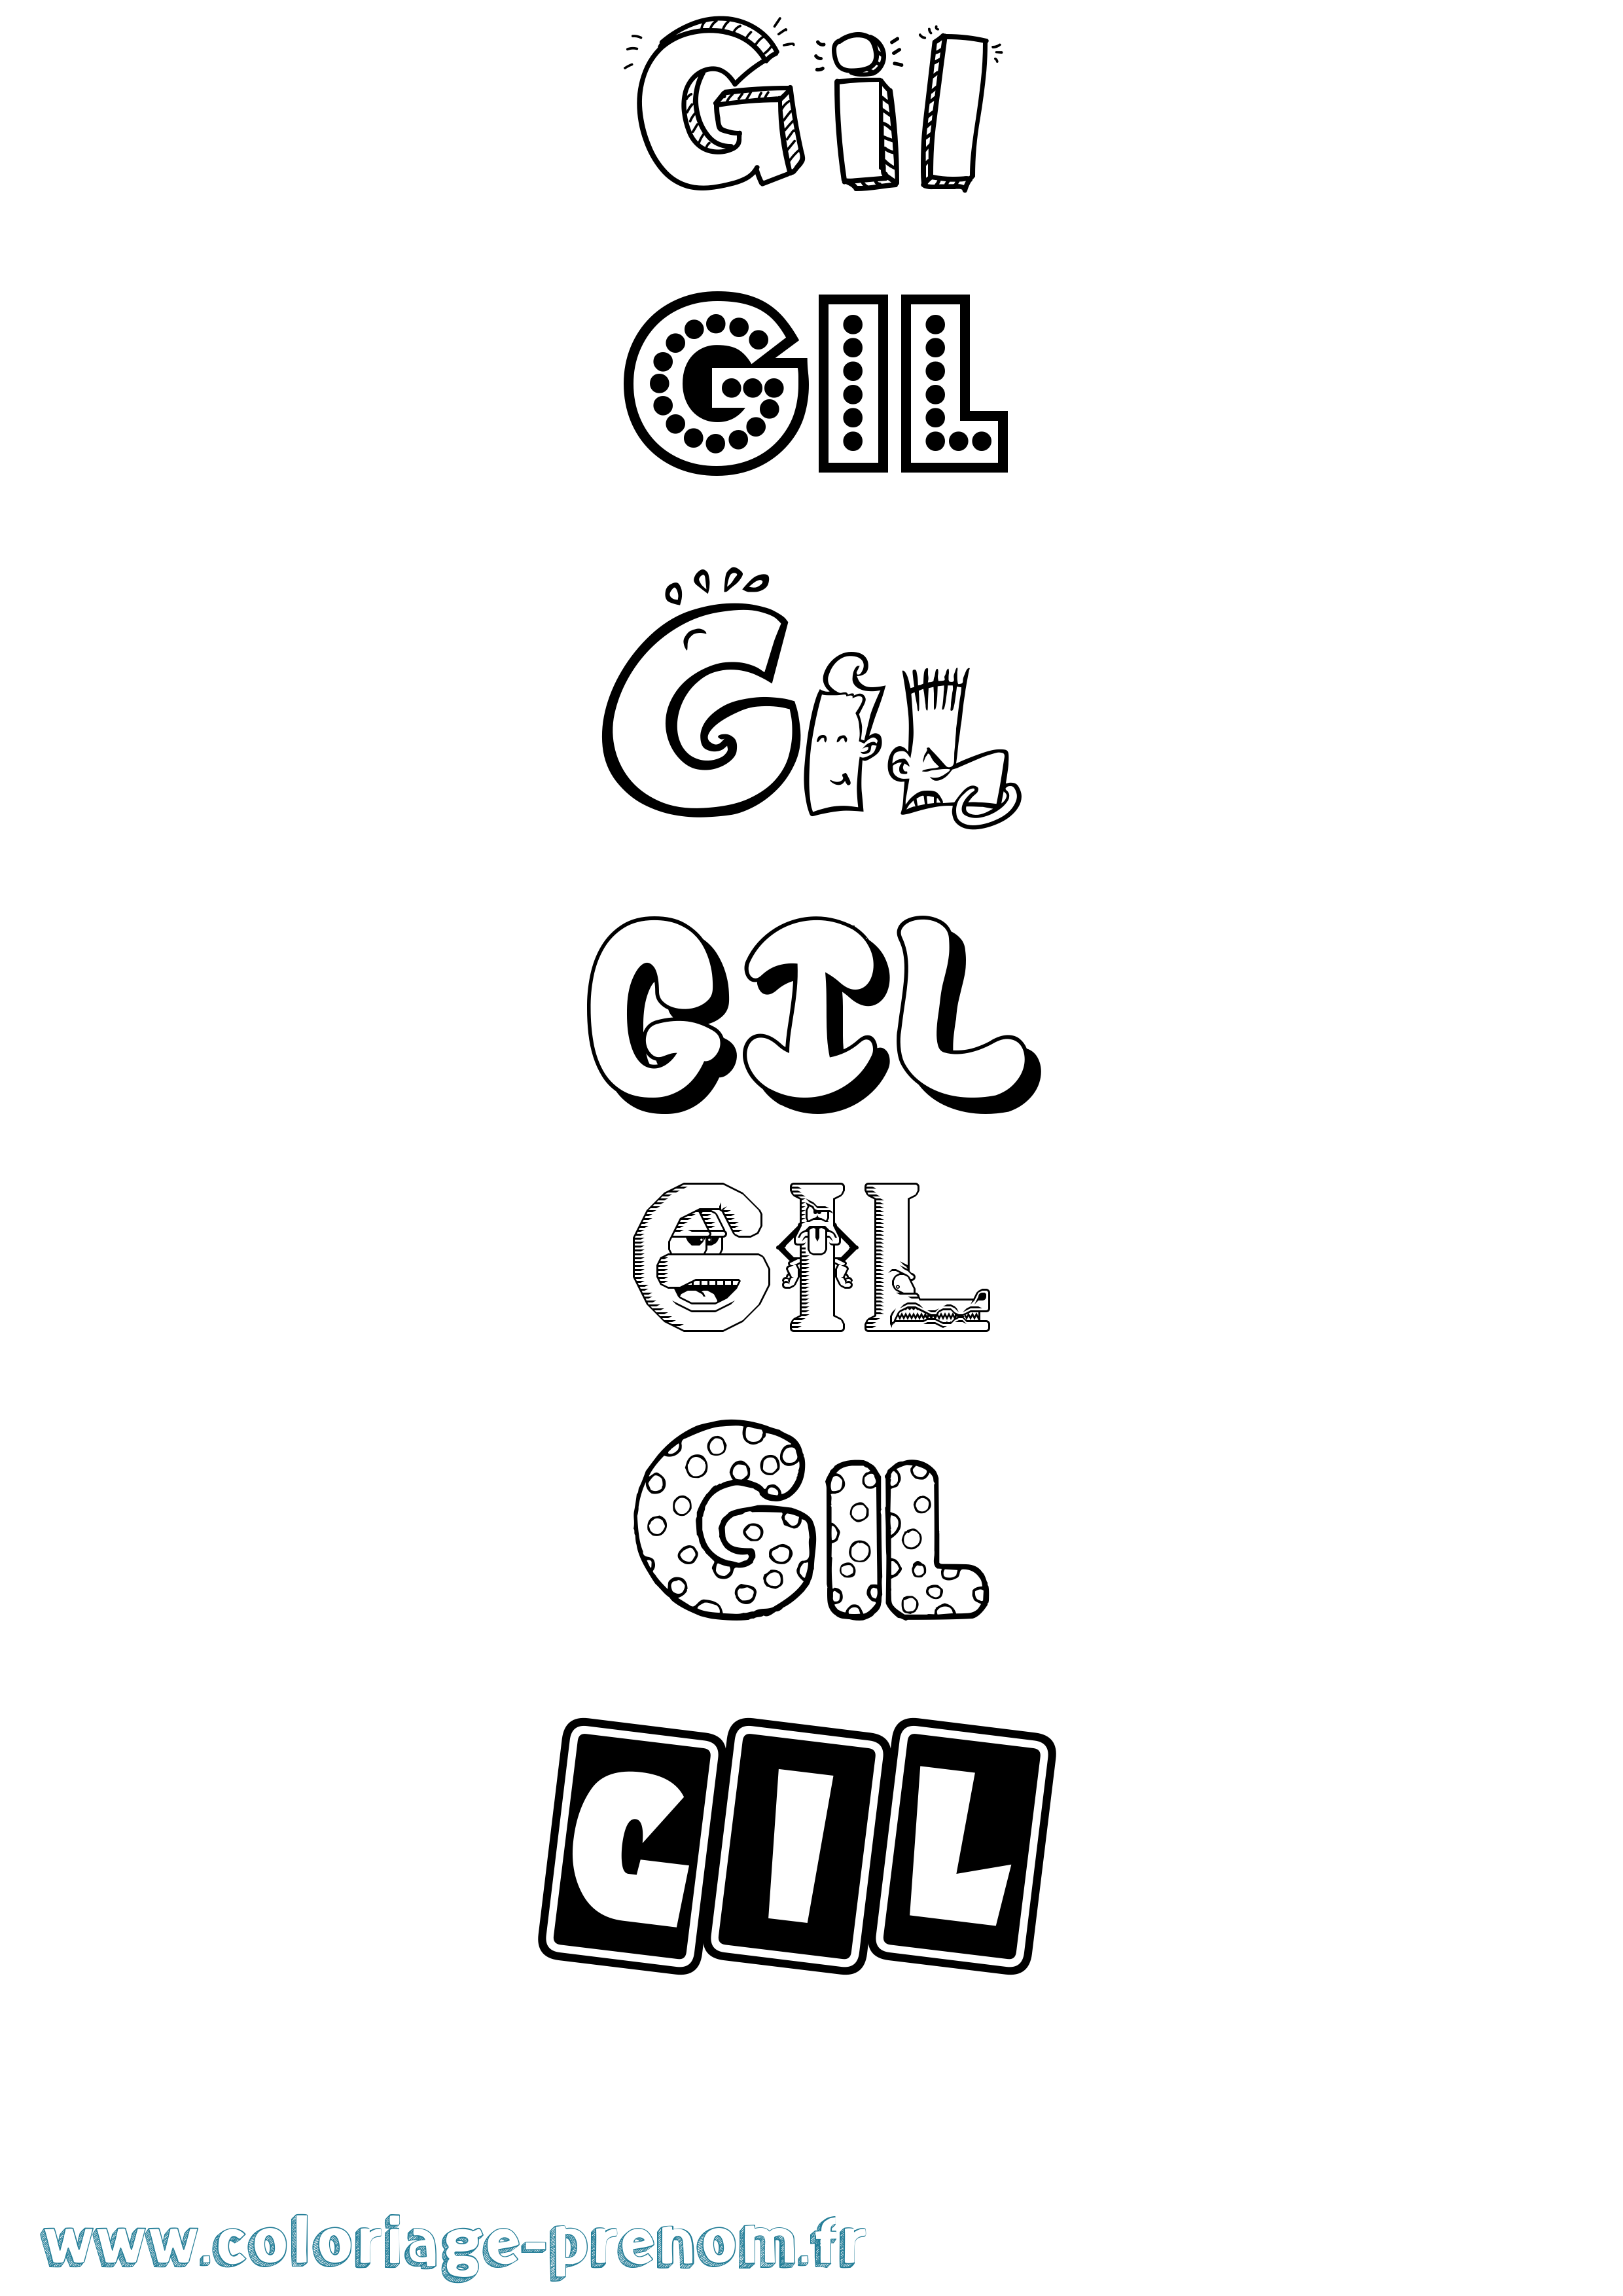 Coloriage prénom Gil Fun